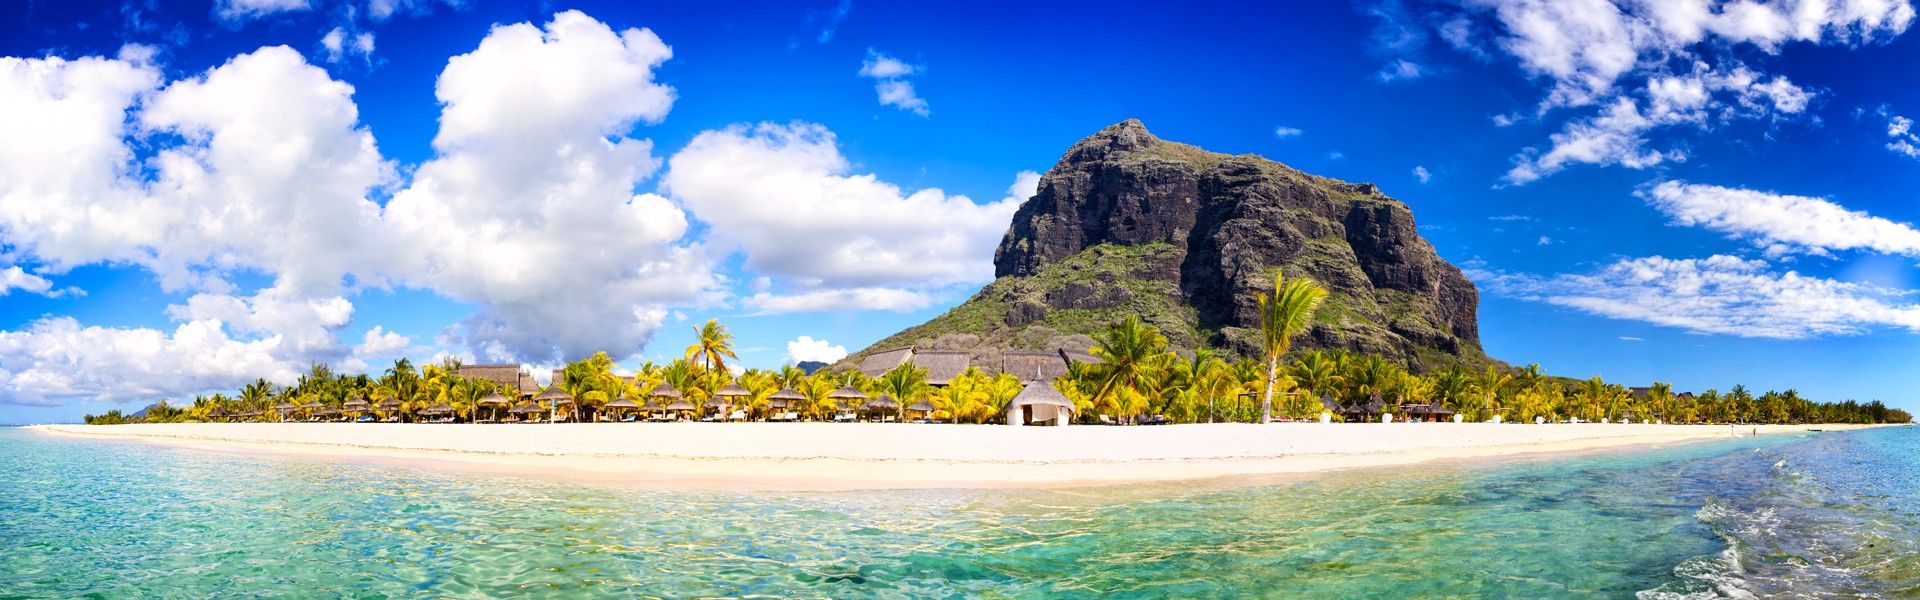 Découvrez les particularités de quelques endroits de l'île Maurice dans :